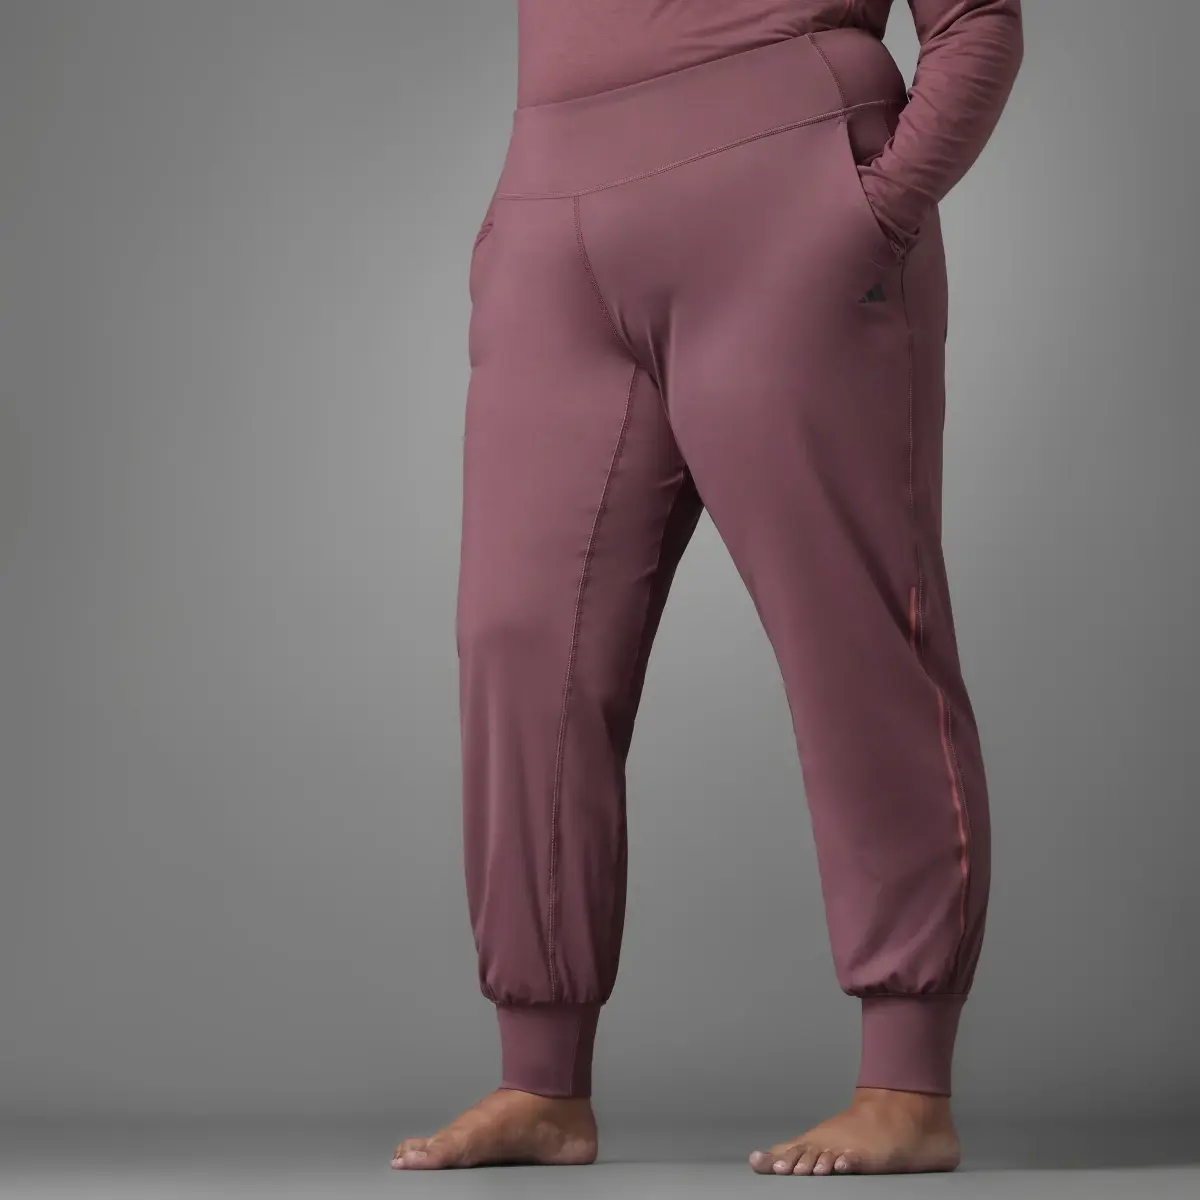 Authentic Balance Yoga Pants (Plus Size)